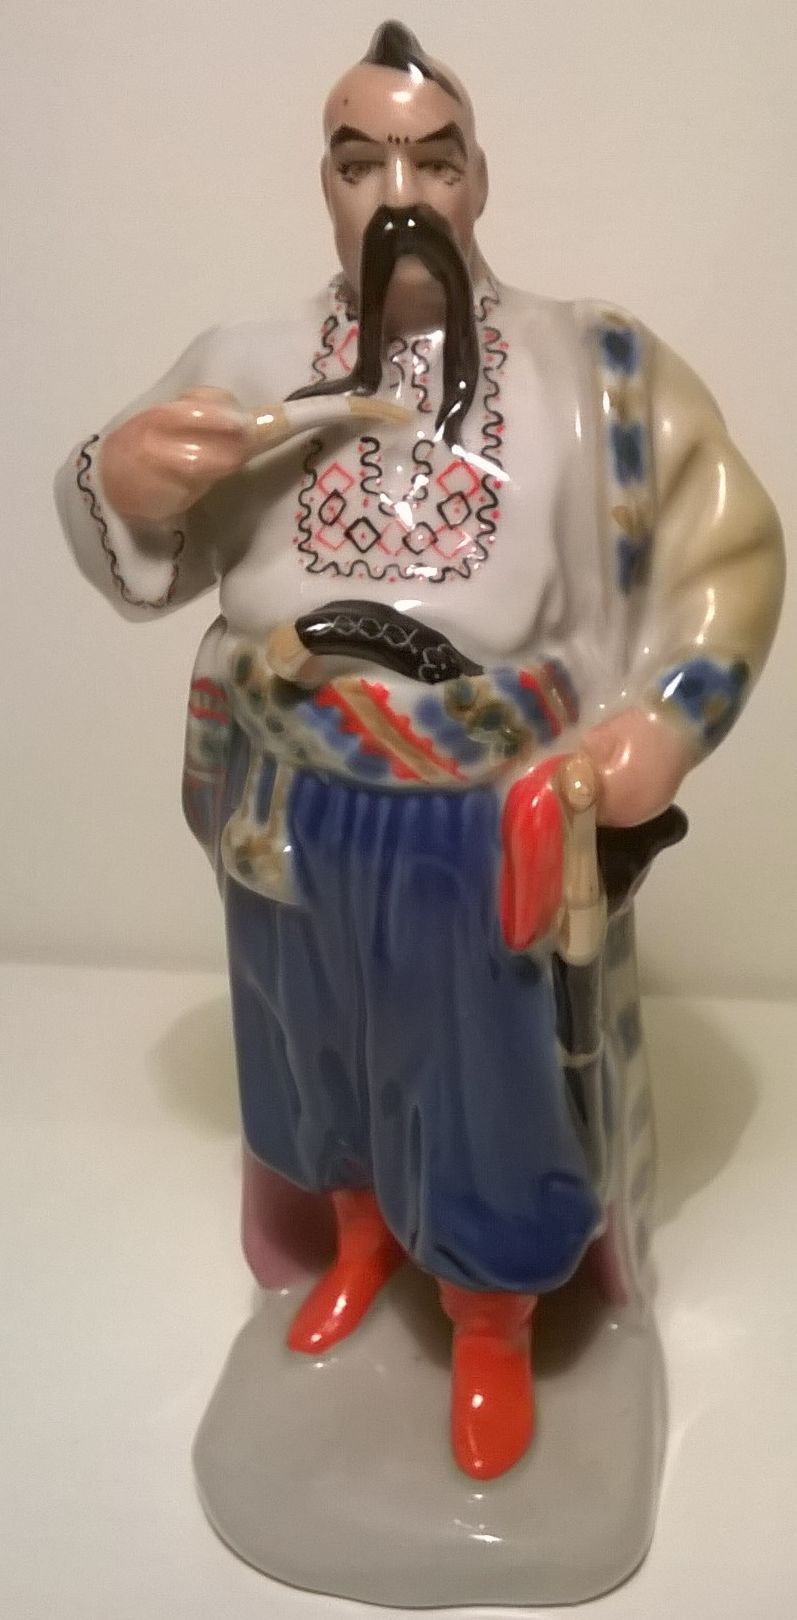 Radziecka figurka Tarasa Bulby